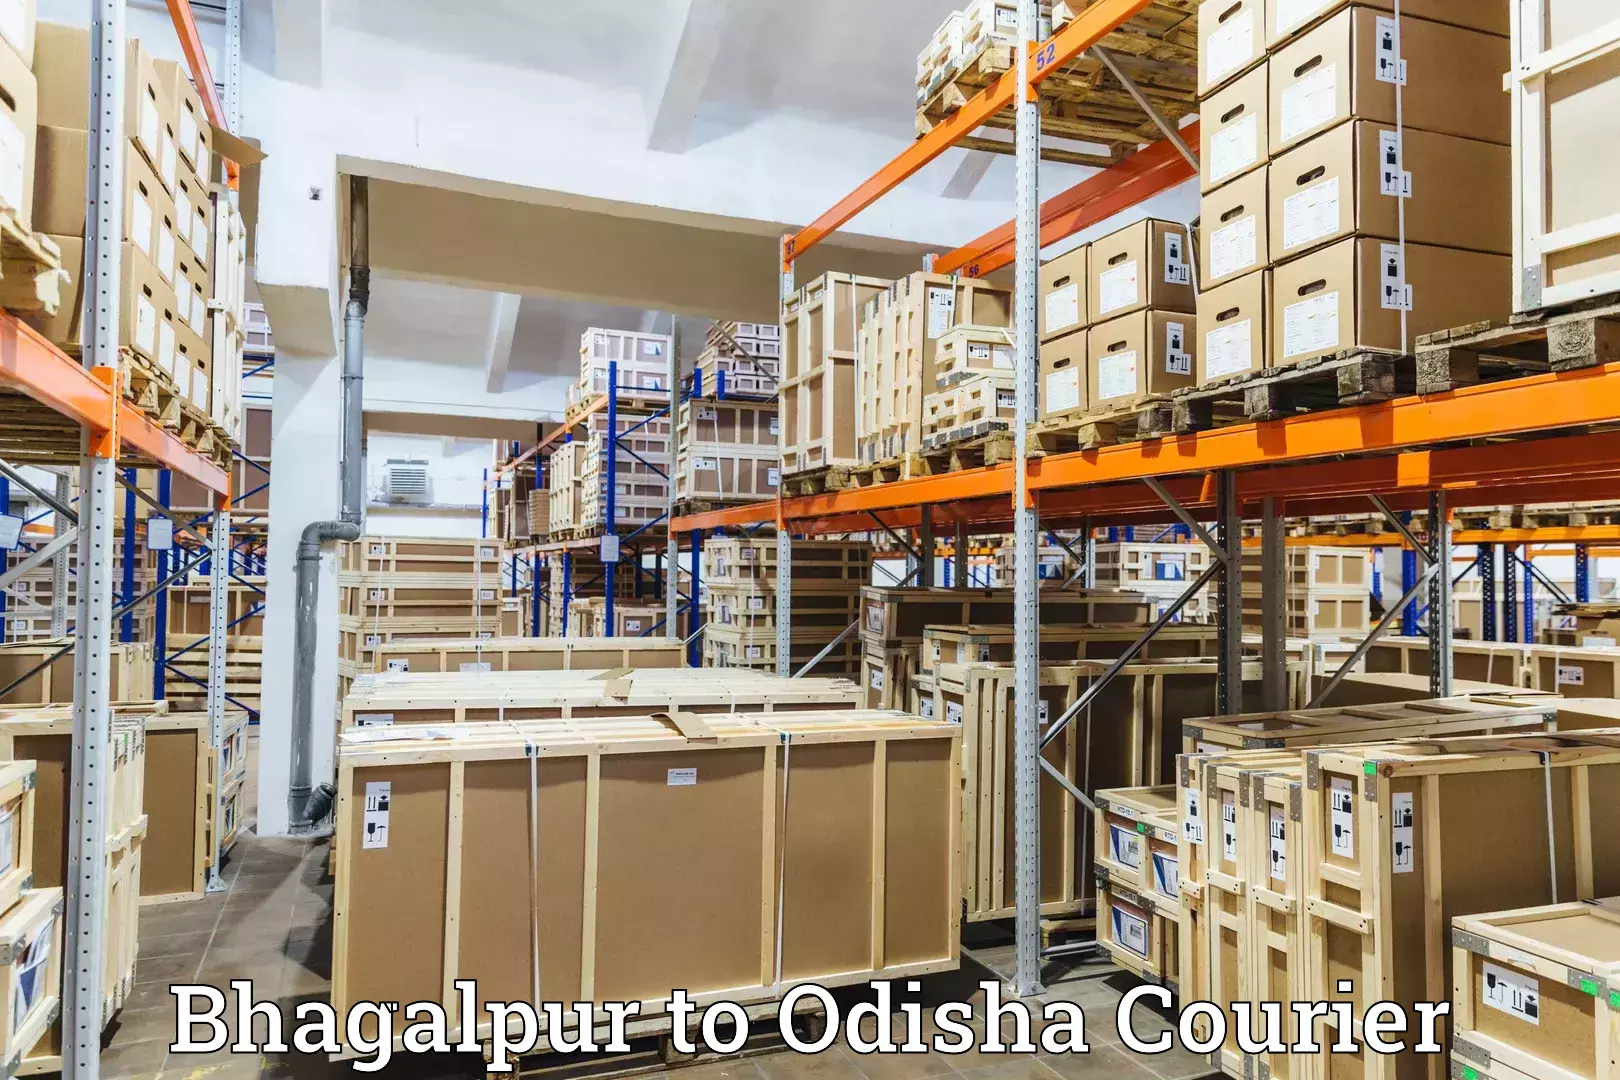 Local courier options Bhagalpur to Patkura